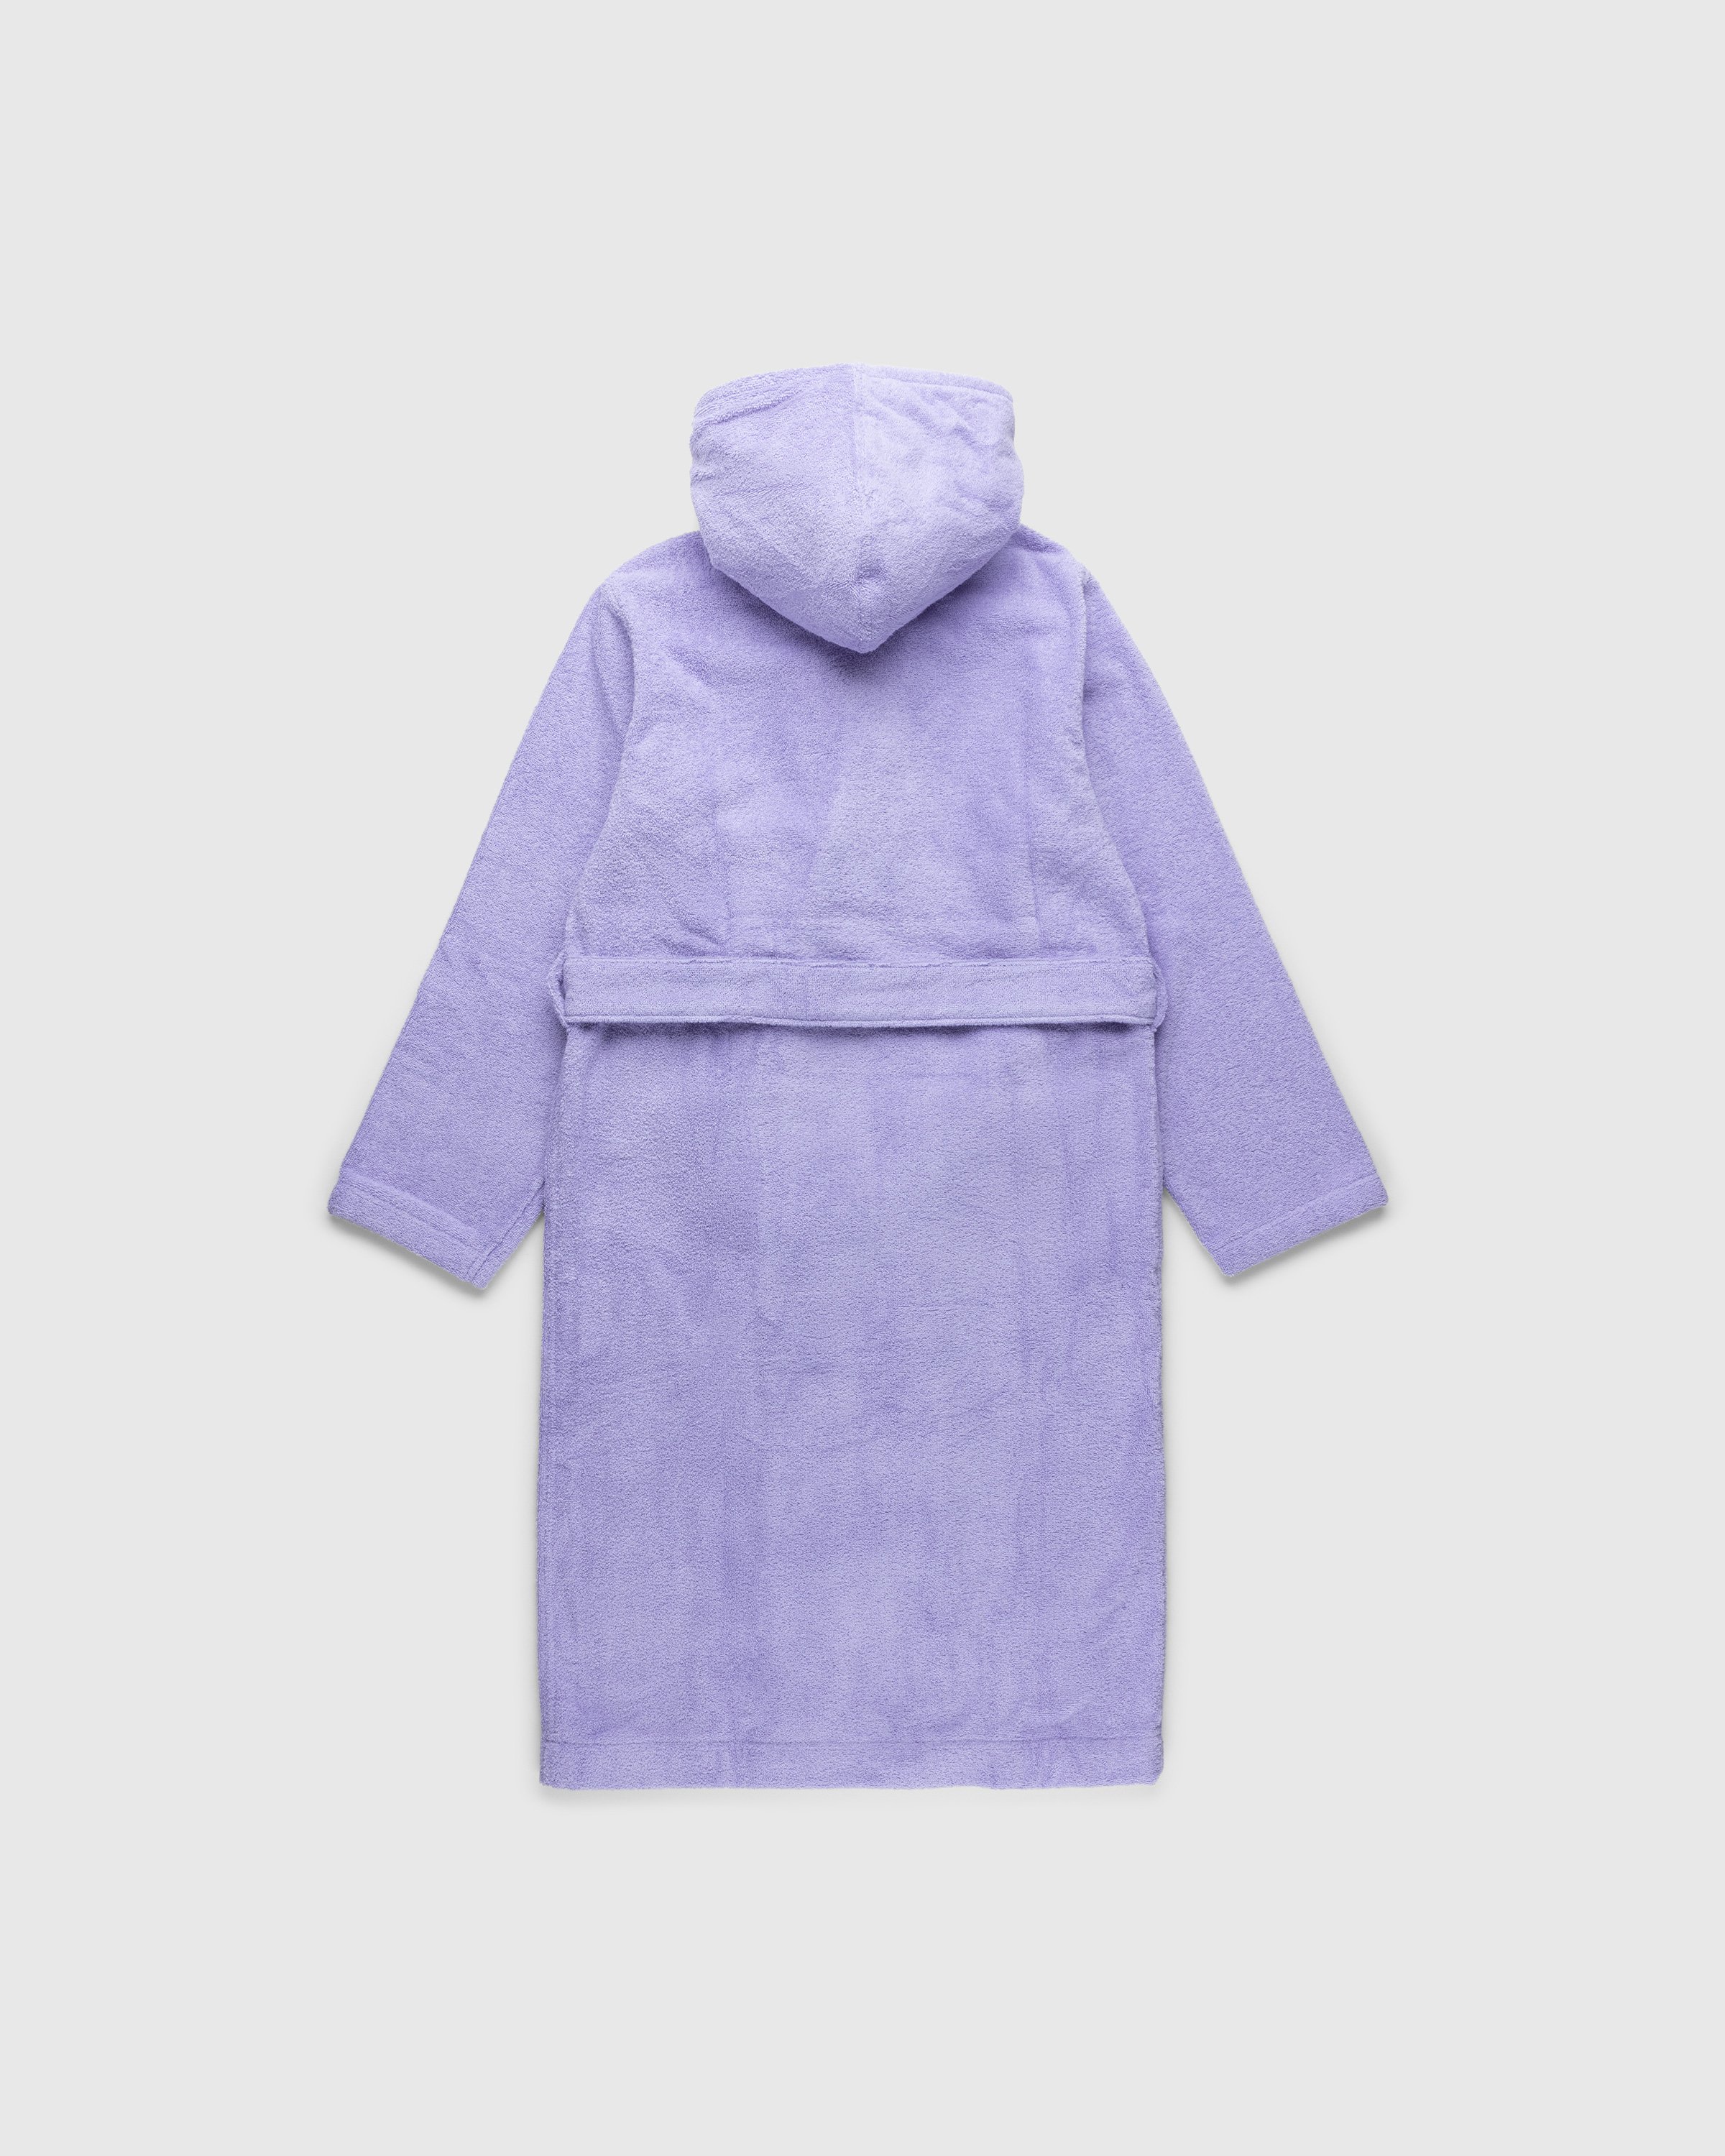 Tekla - Hooded Bathrobe Solid Lavender - Lifestyle - Purple - Image 2